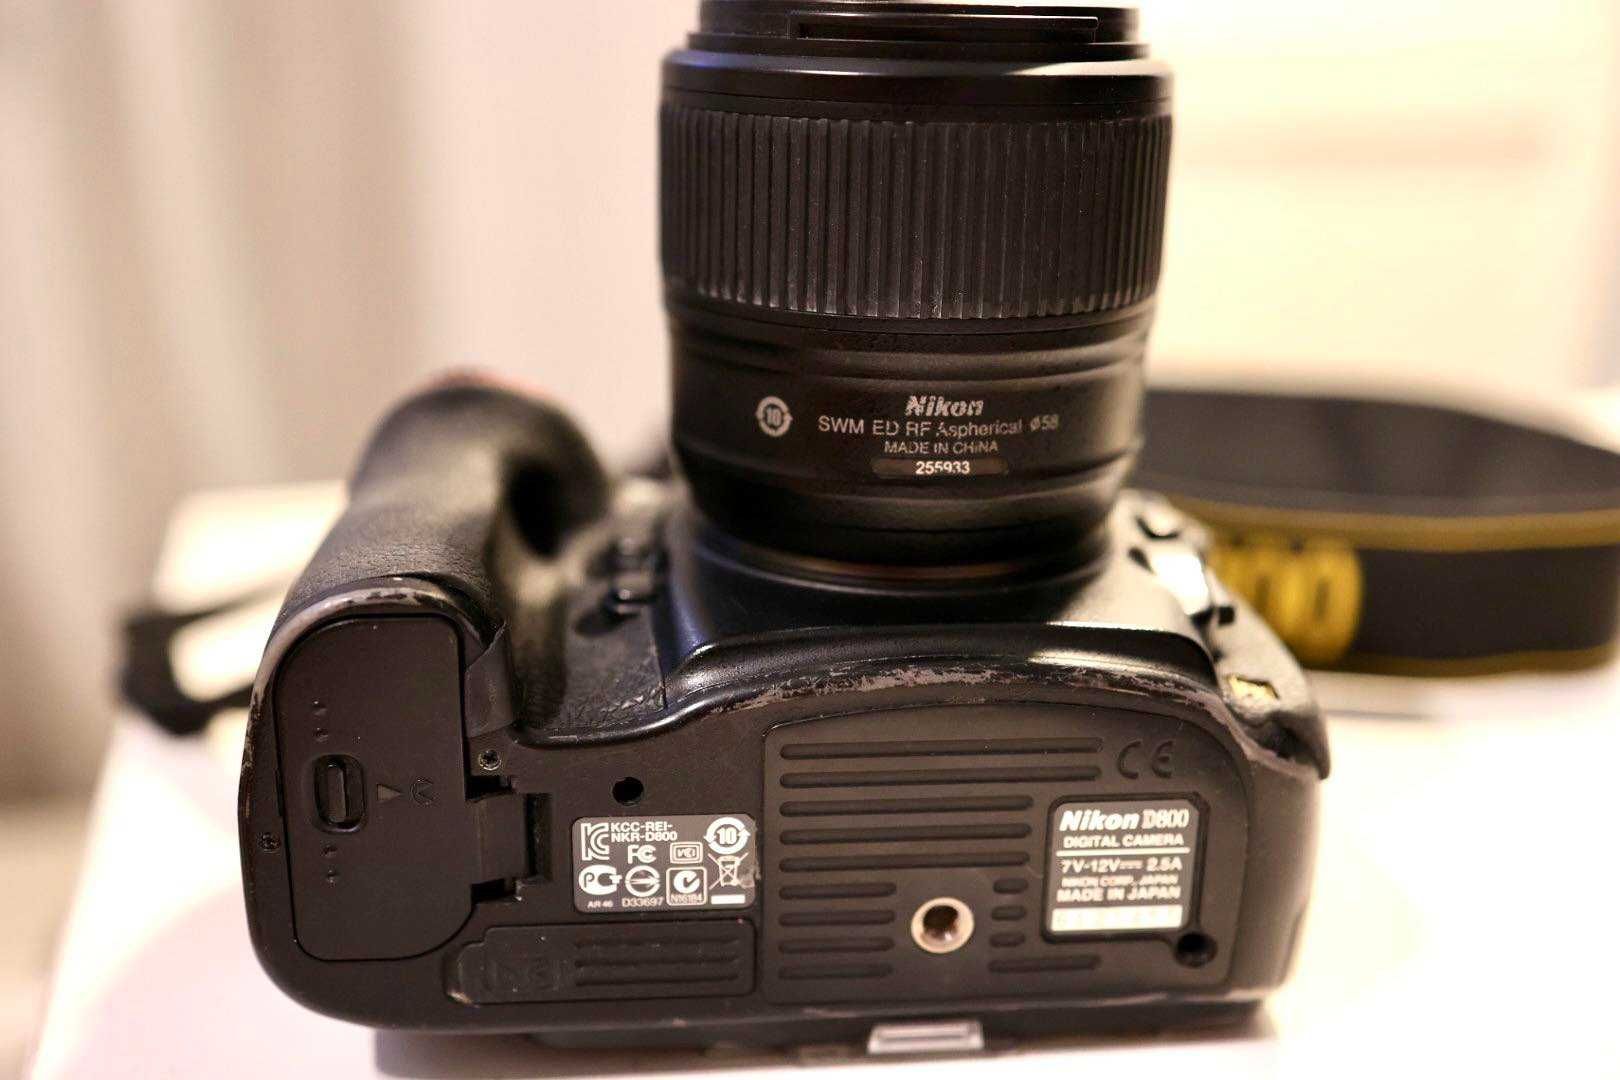 Aparat Nikon D800 + obiektyw nikkor AF-S 35 mm f/1.8 G ED